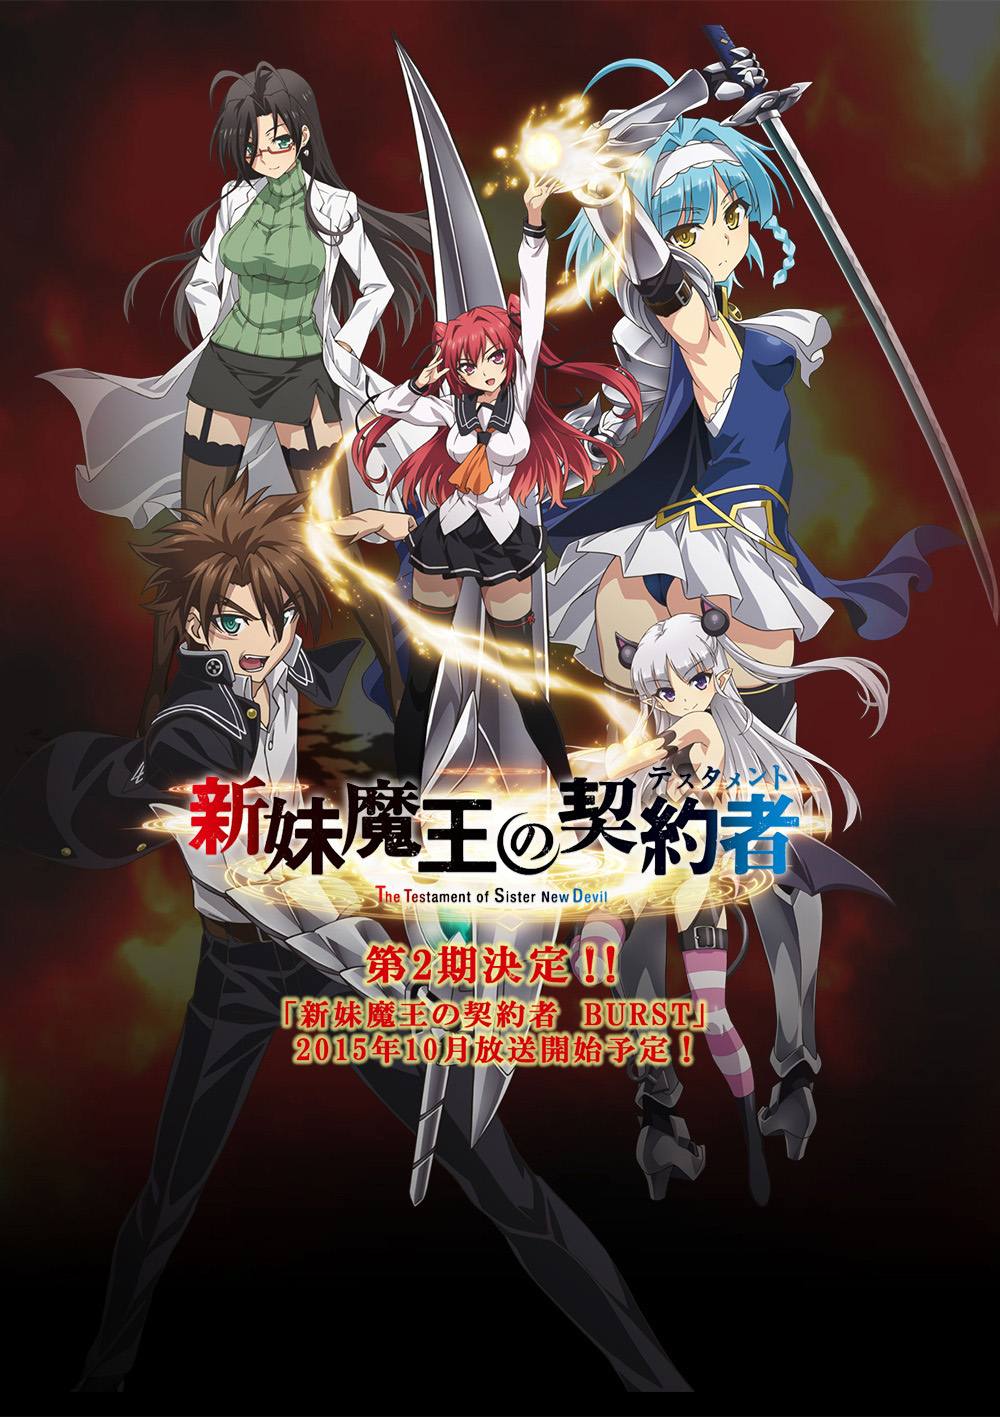 Kore wa Zombie Desu ka? Light Novels to Bundle Anime - News